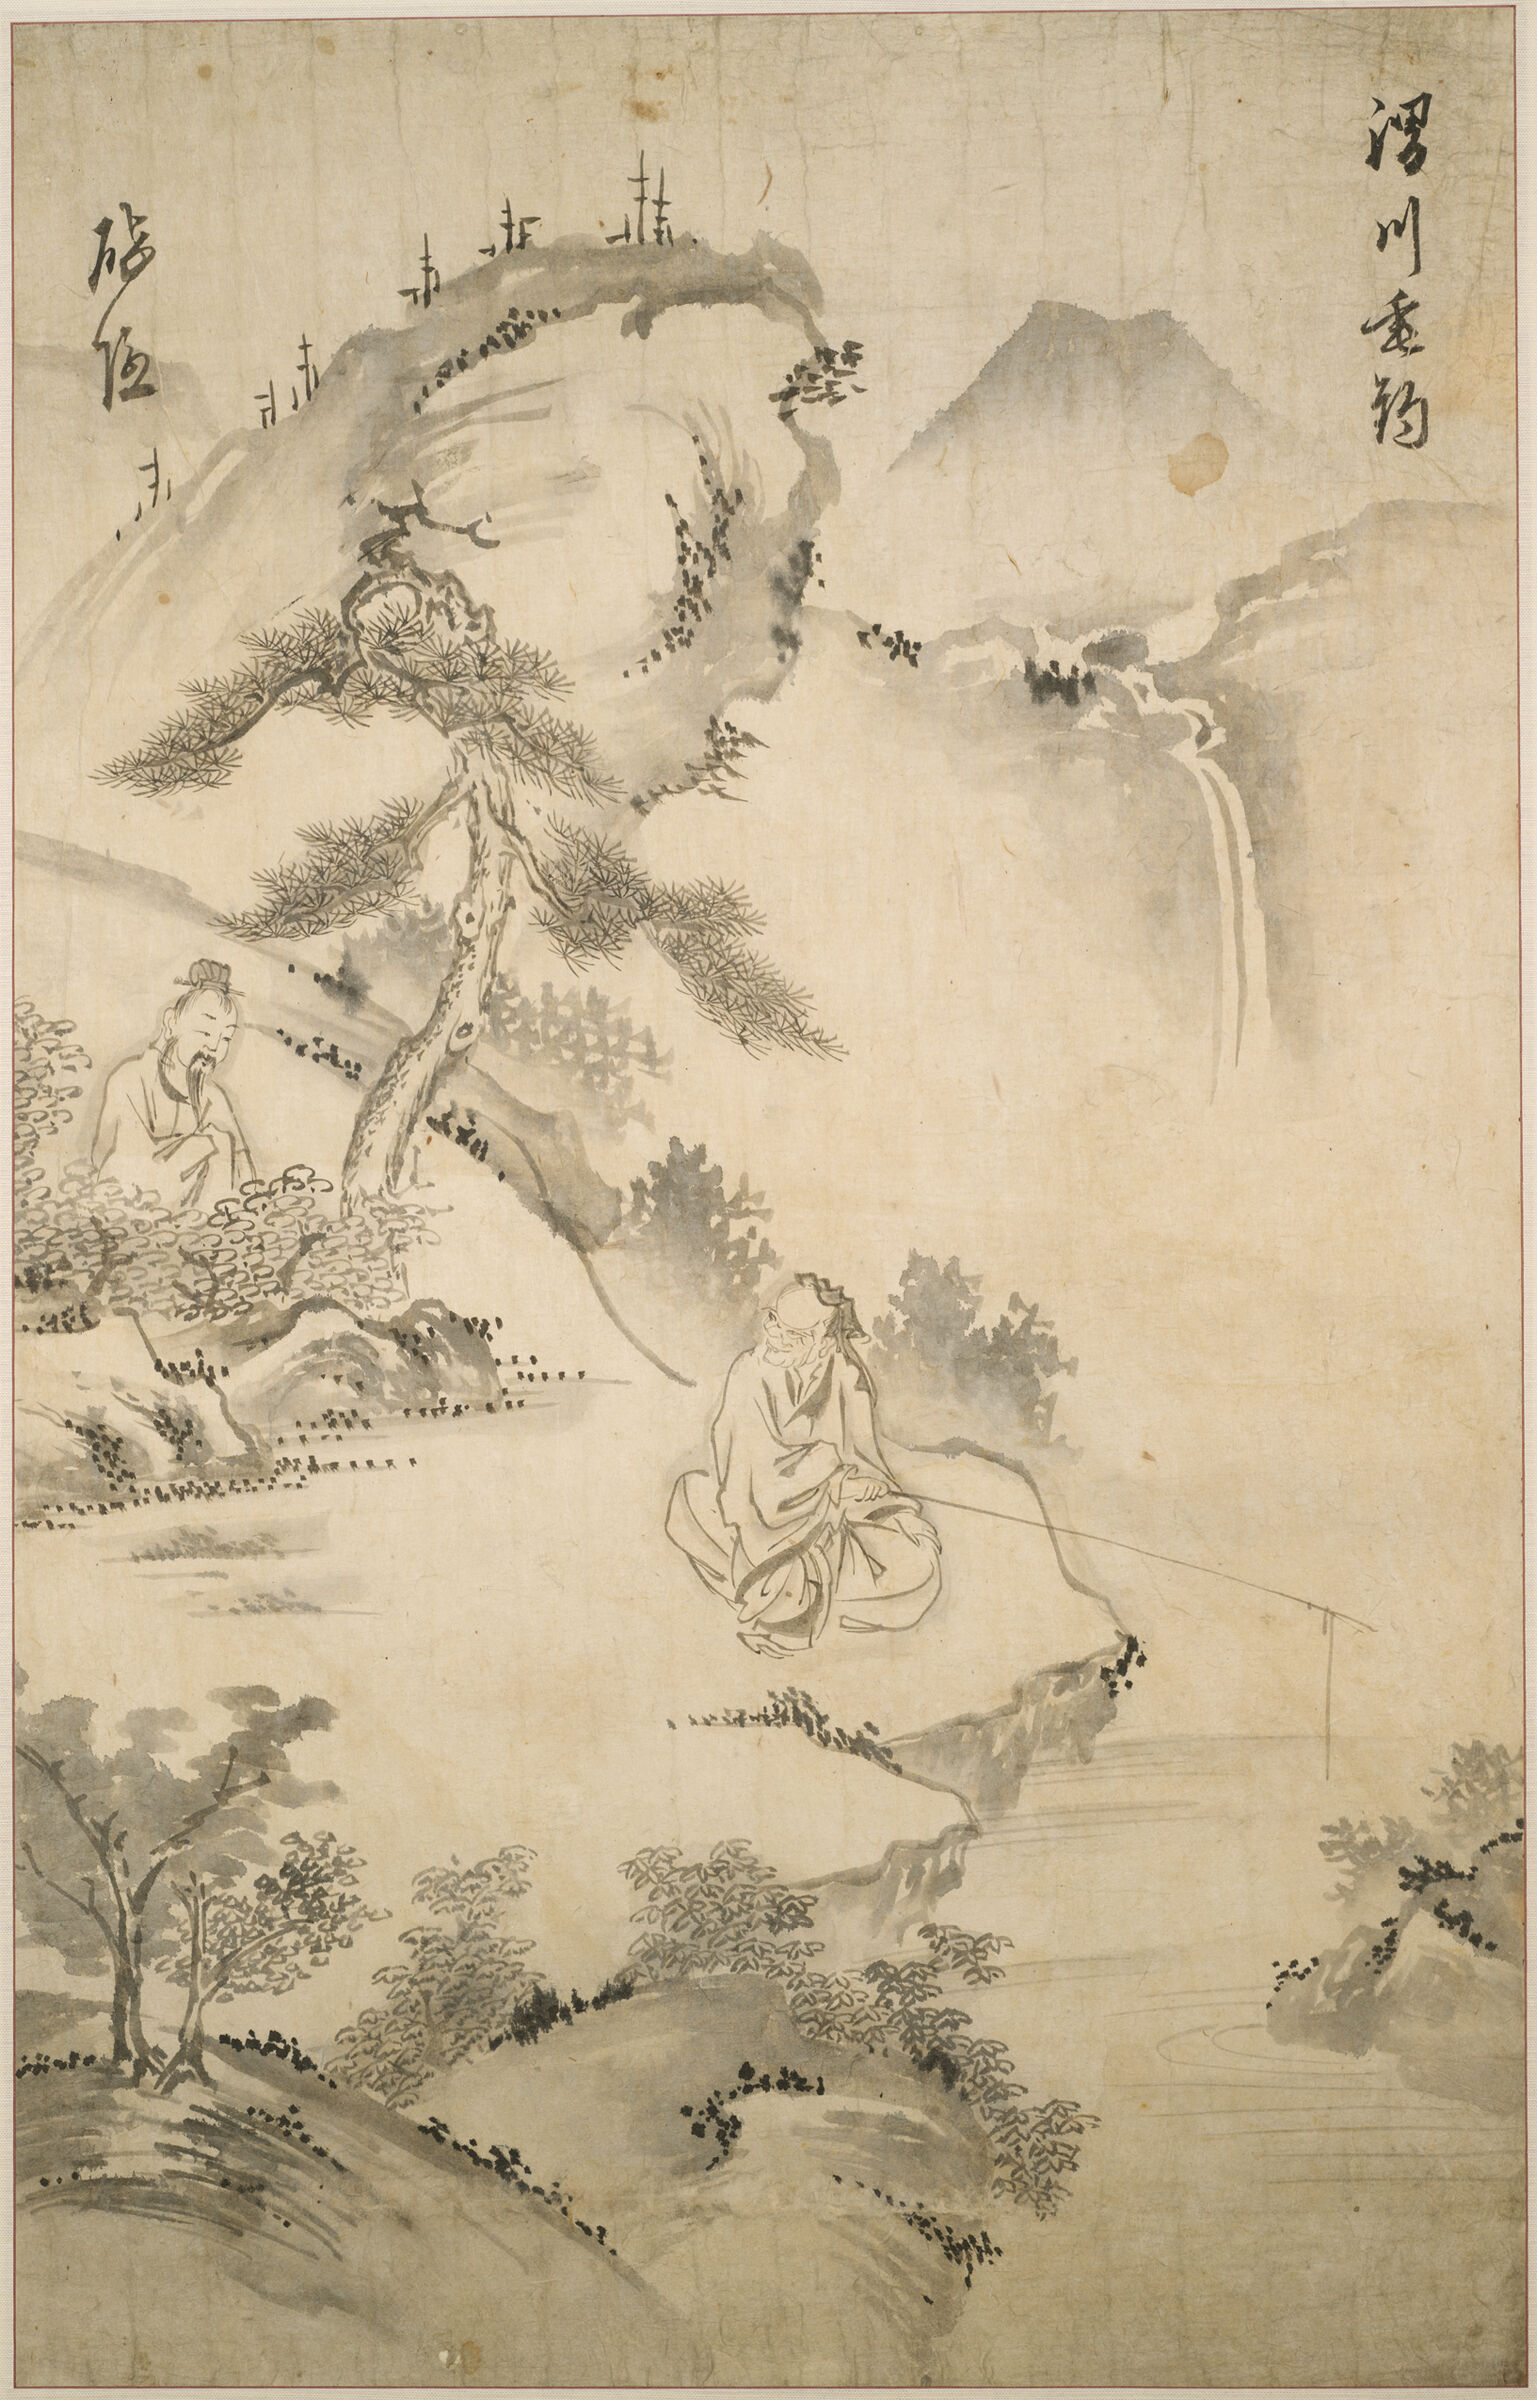 The Sage Jiang Ziya (10Th Century Bc) Fishing In The Wei River, Approached By Wen Wang The Ruler Of Zhou